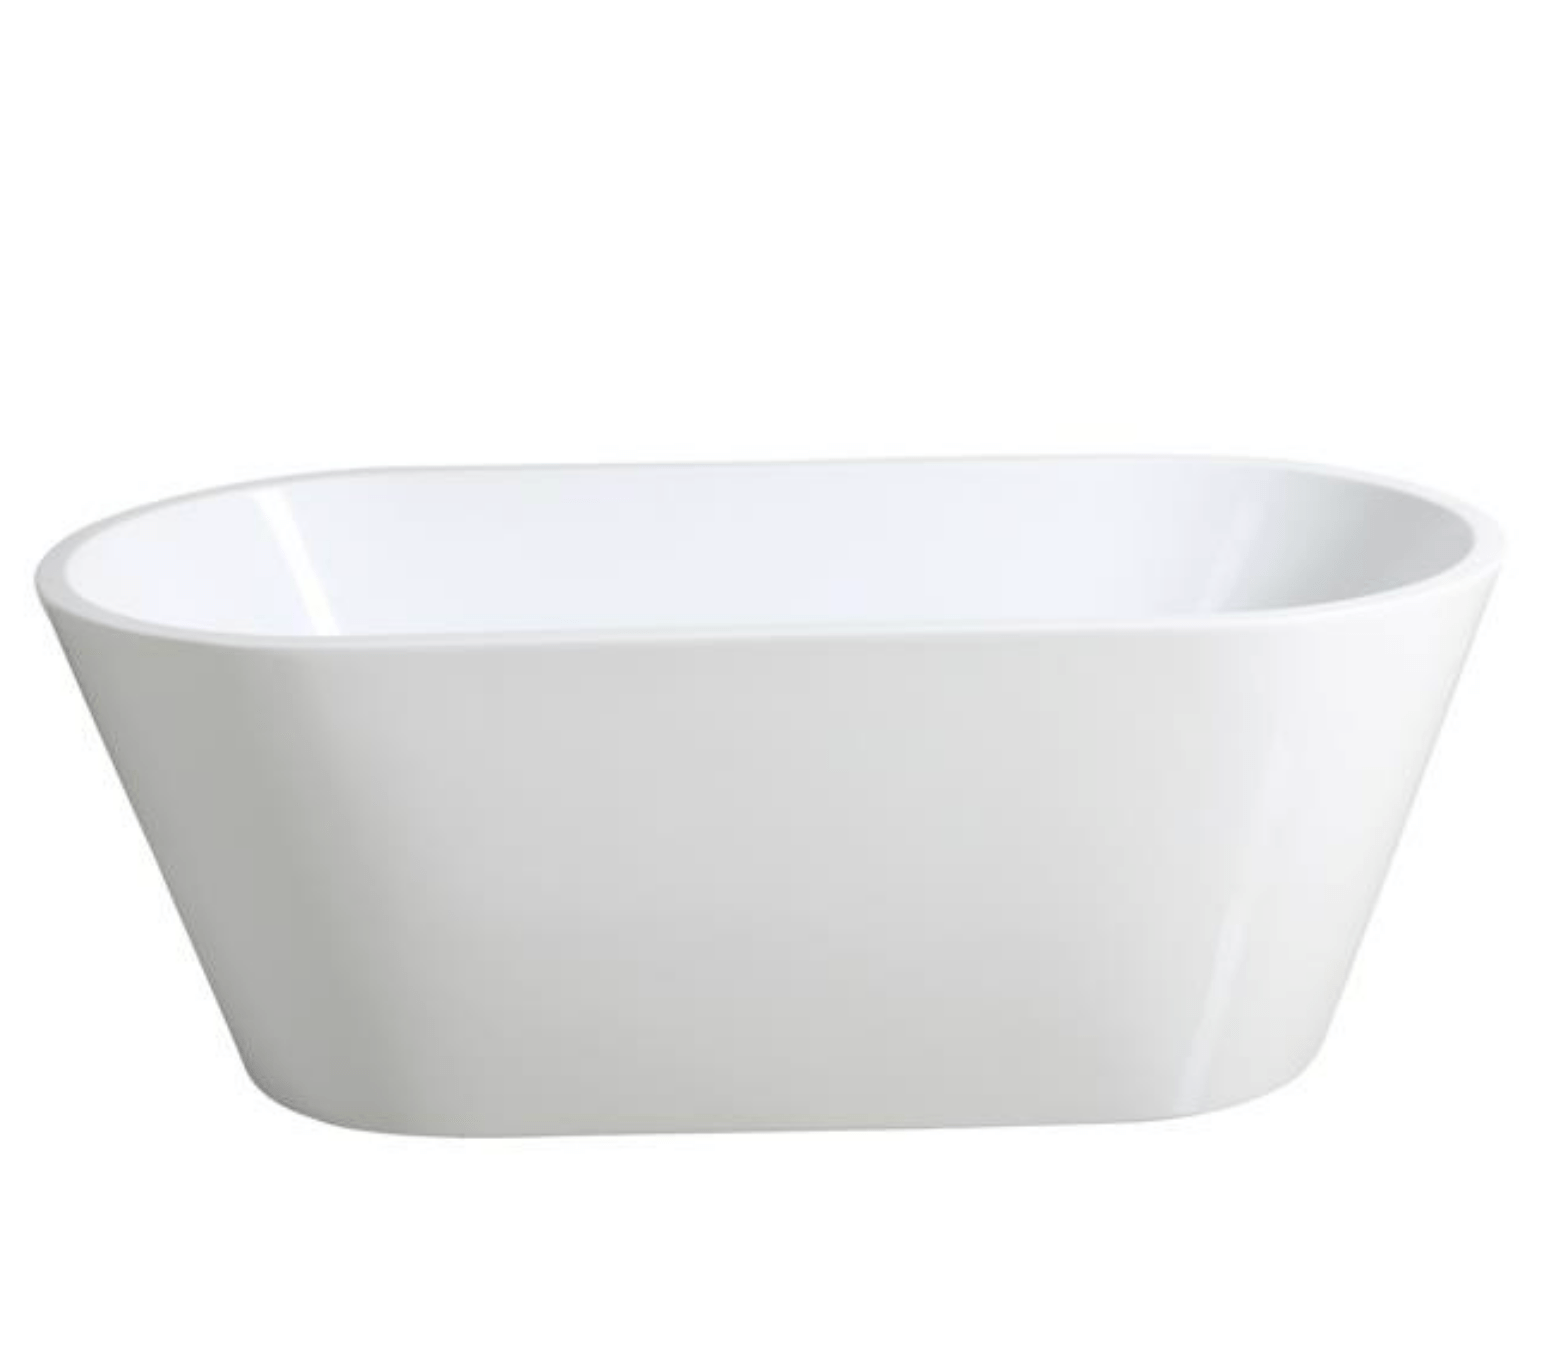 1200-1700mm OVIA Gloss White Oval Bathtub